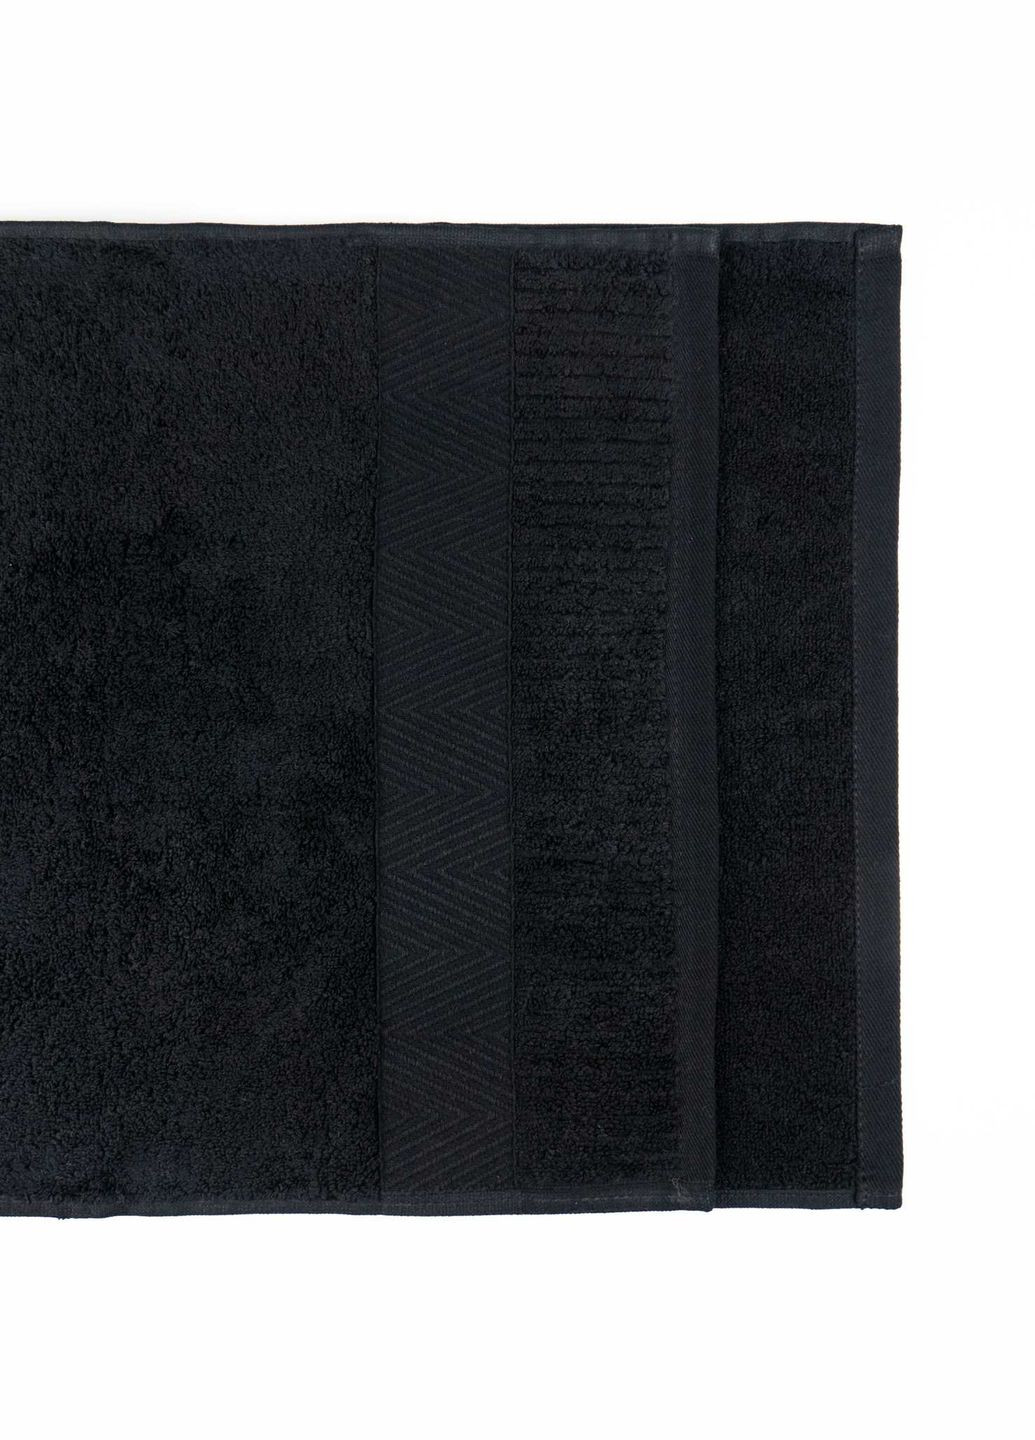 GM Textile полотенце махровое для лица и рук 40x70см премиум качества зеро твист бордюр 550г/м2 () черный производство -